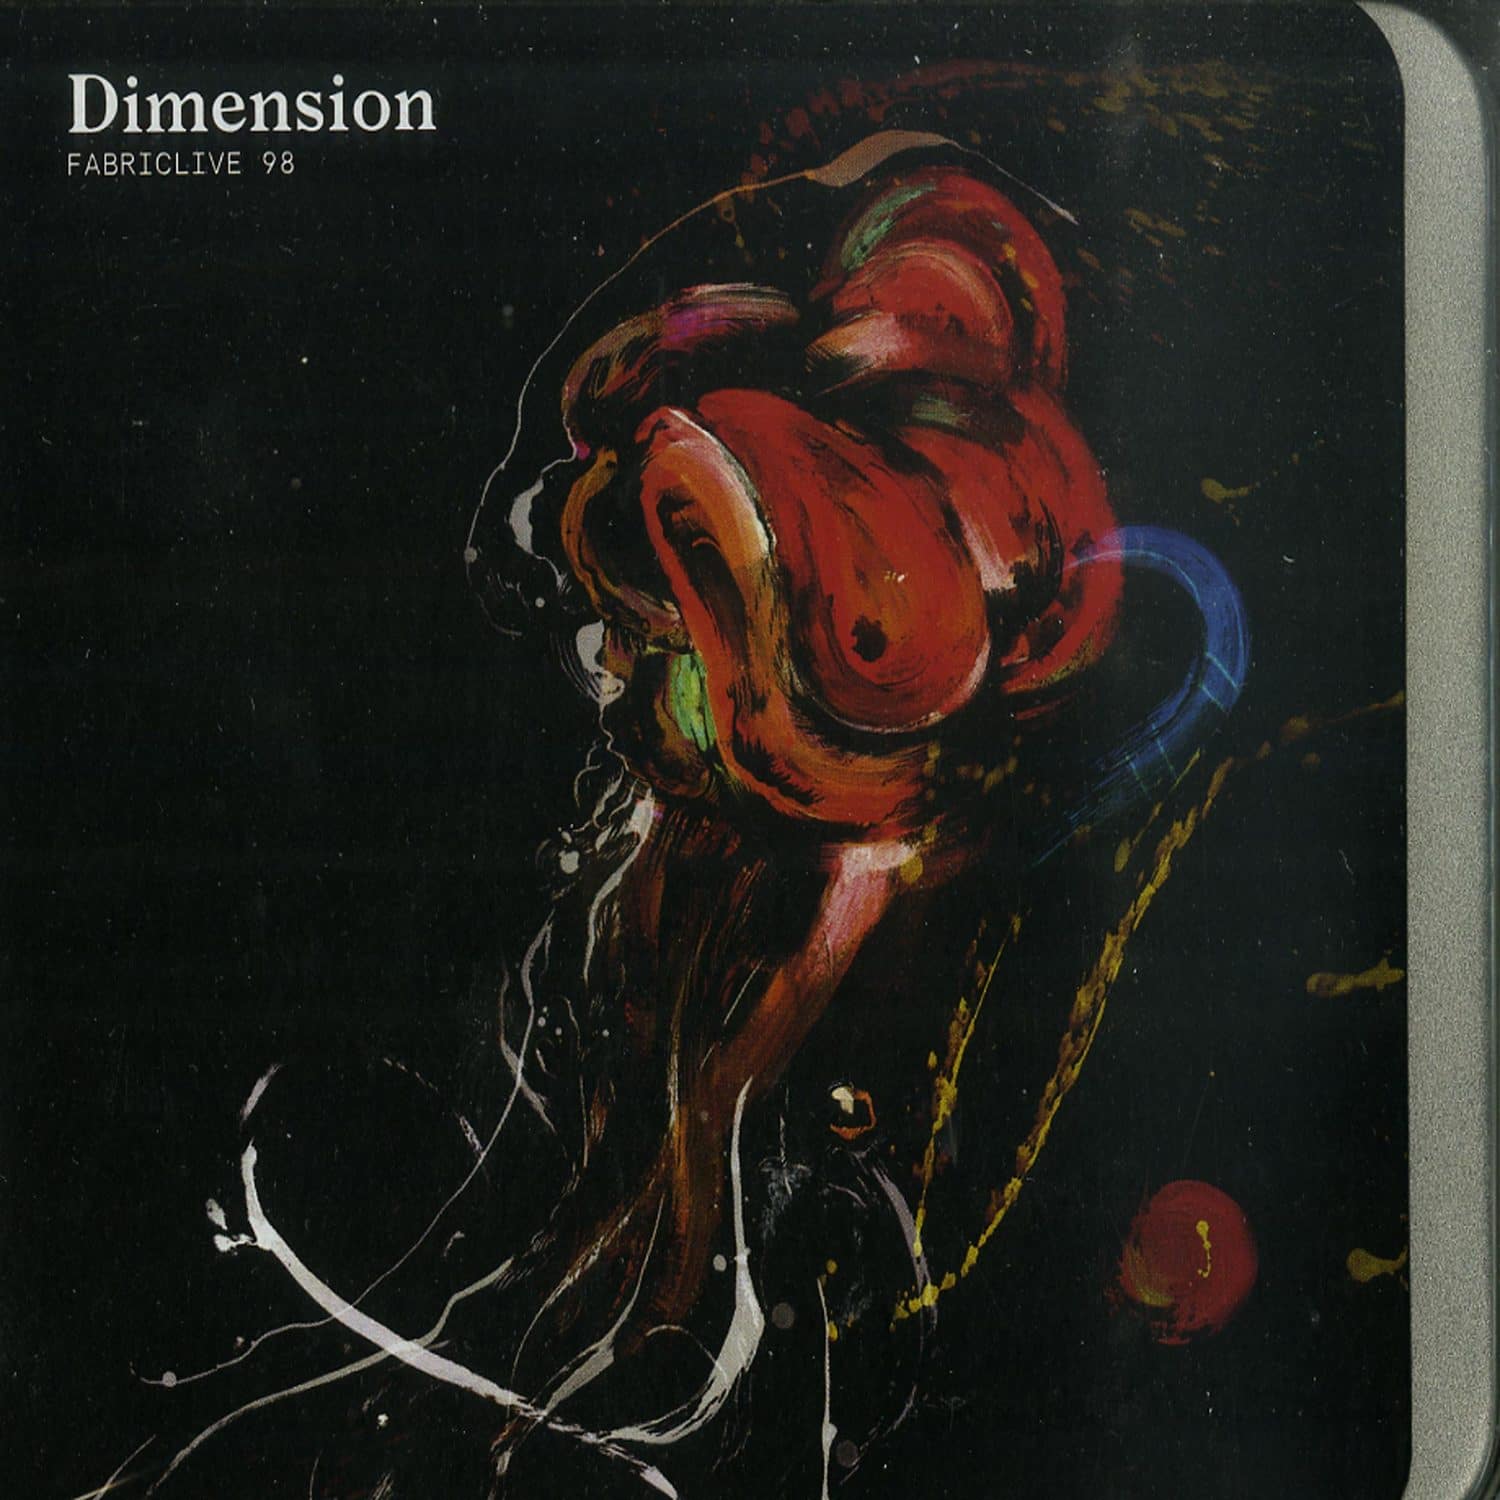 Dimension - FABRIC LIVE 98 